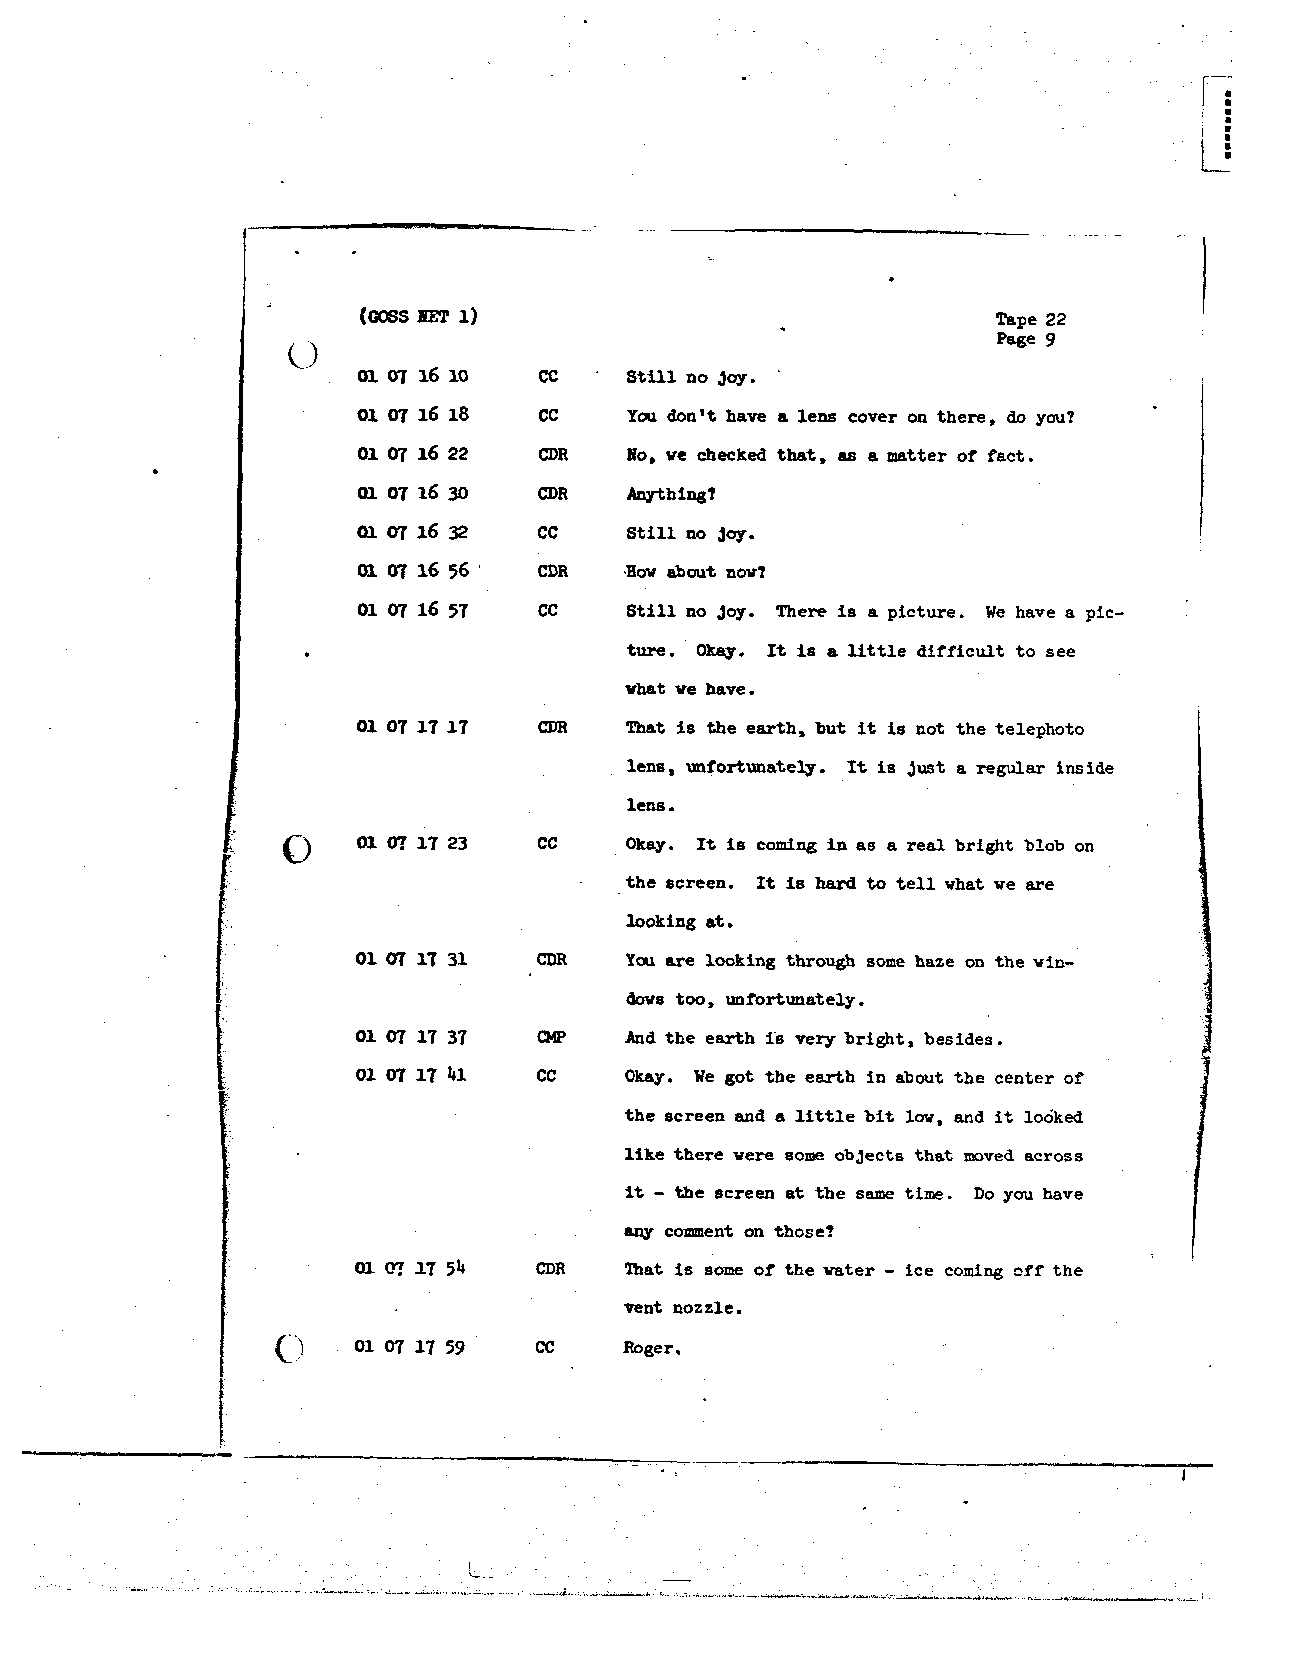 Page 172 of Apollo 8’s original transcript